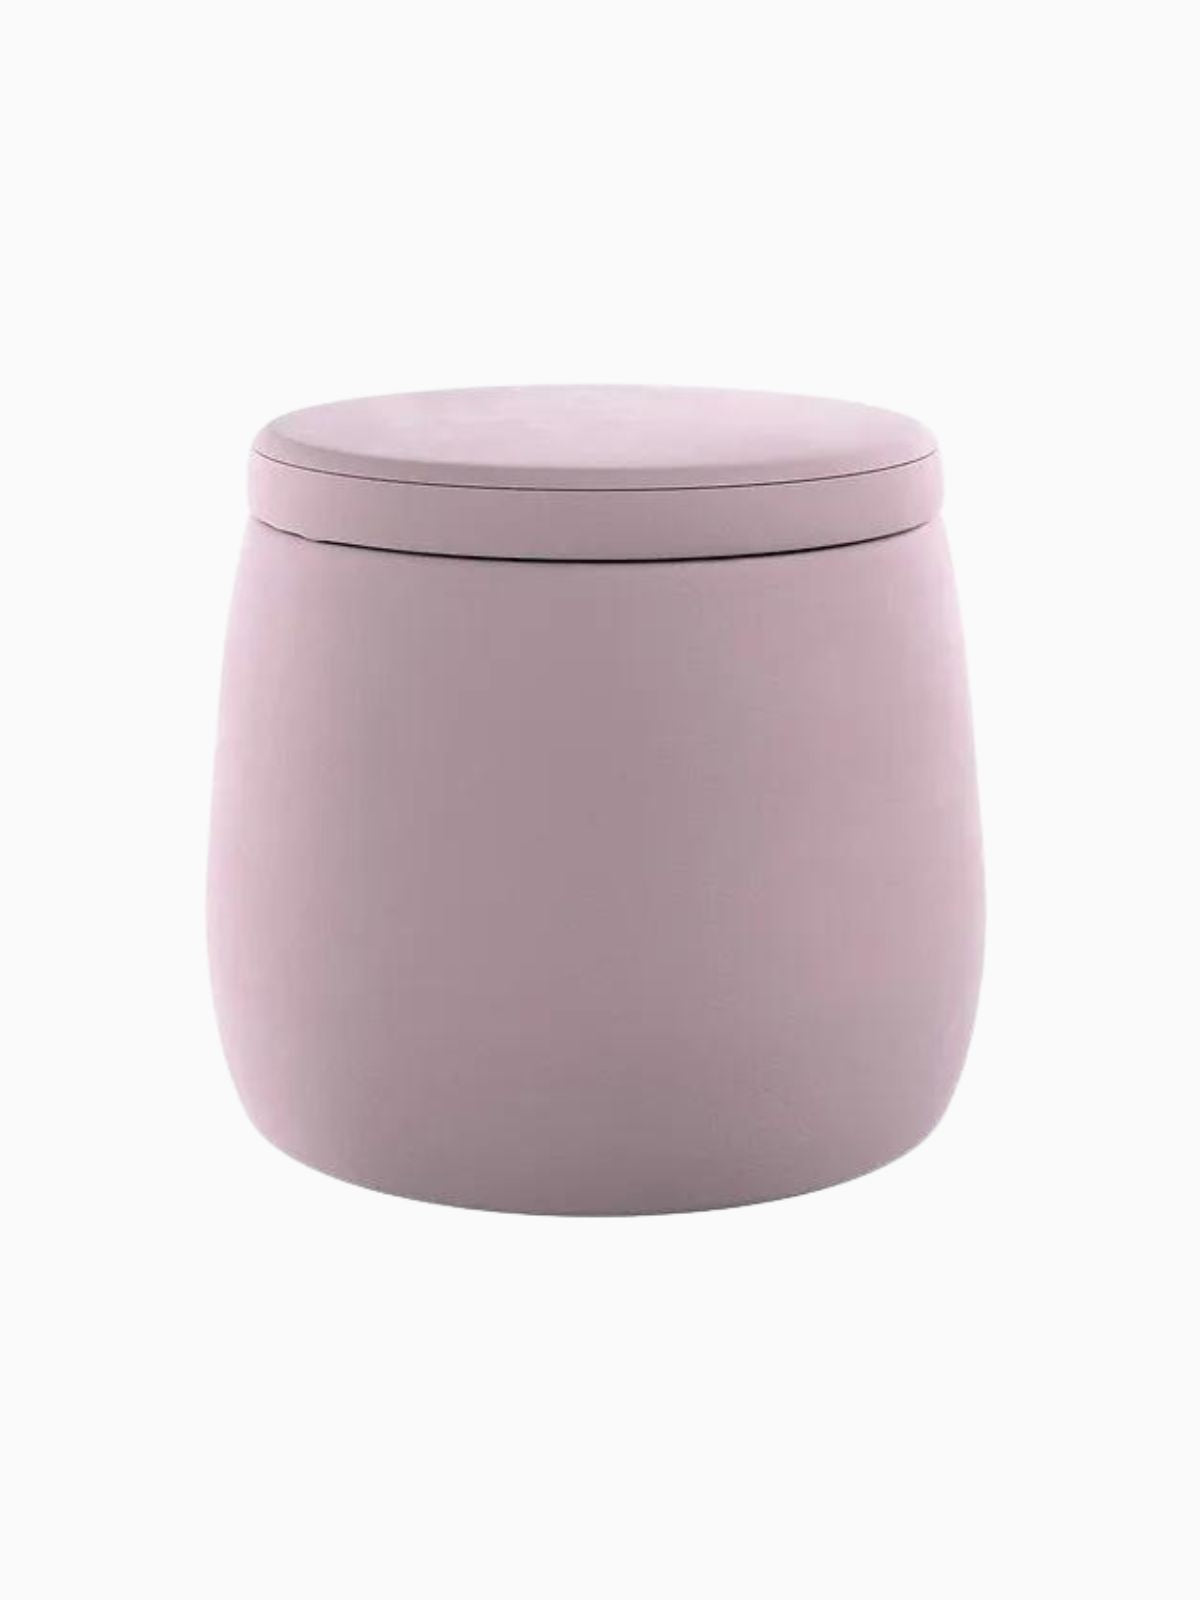 Pouf contenitore Candy Jar in velluto, colore rosa 40x40 cm.-1